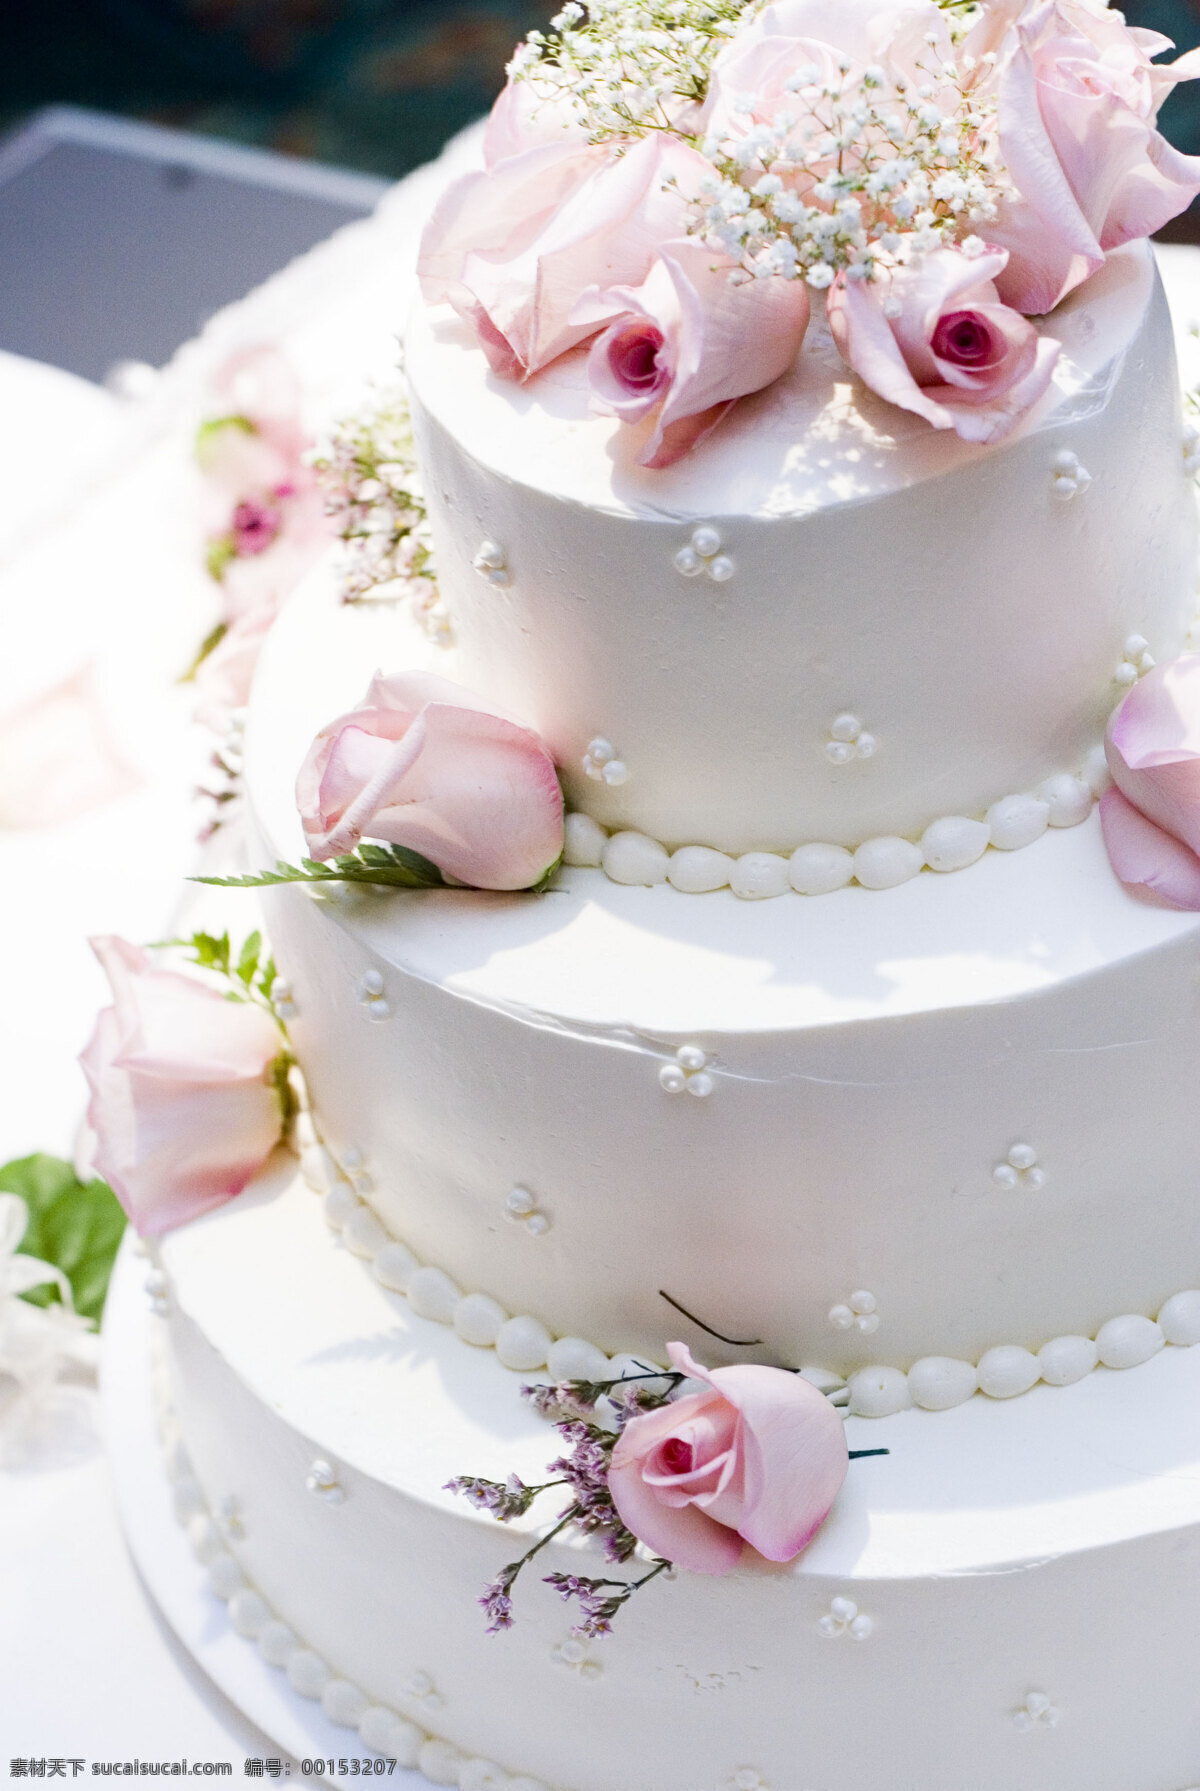 结婚 蛋糕 婚礼蛋糕 玫瑰花 鲜花 花朵 温馨浪漫 生日蛋糕图片 餐饮美食